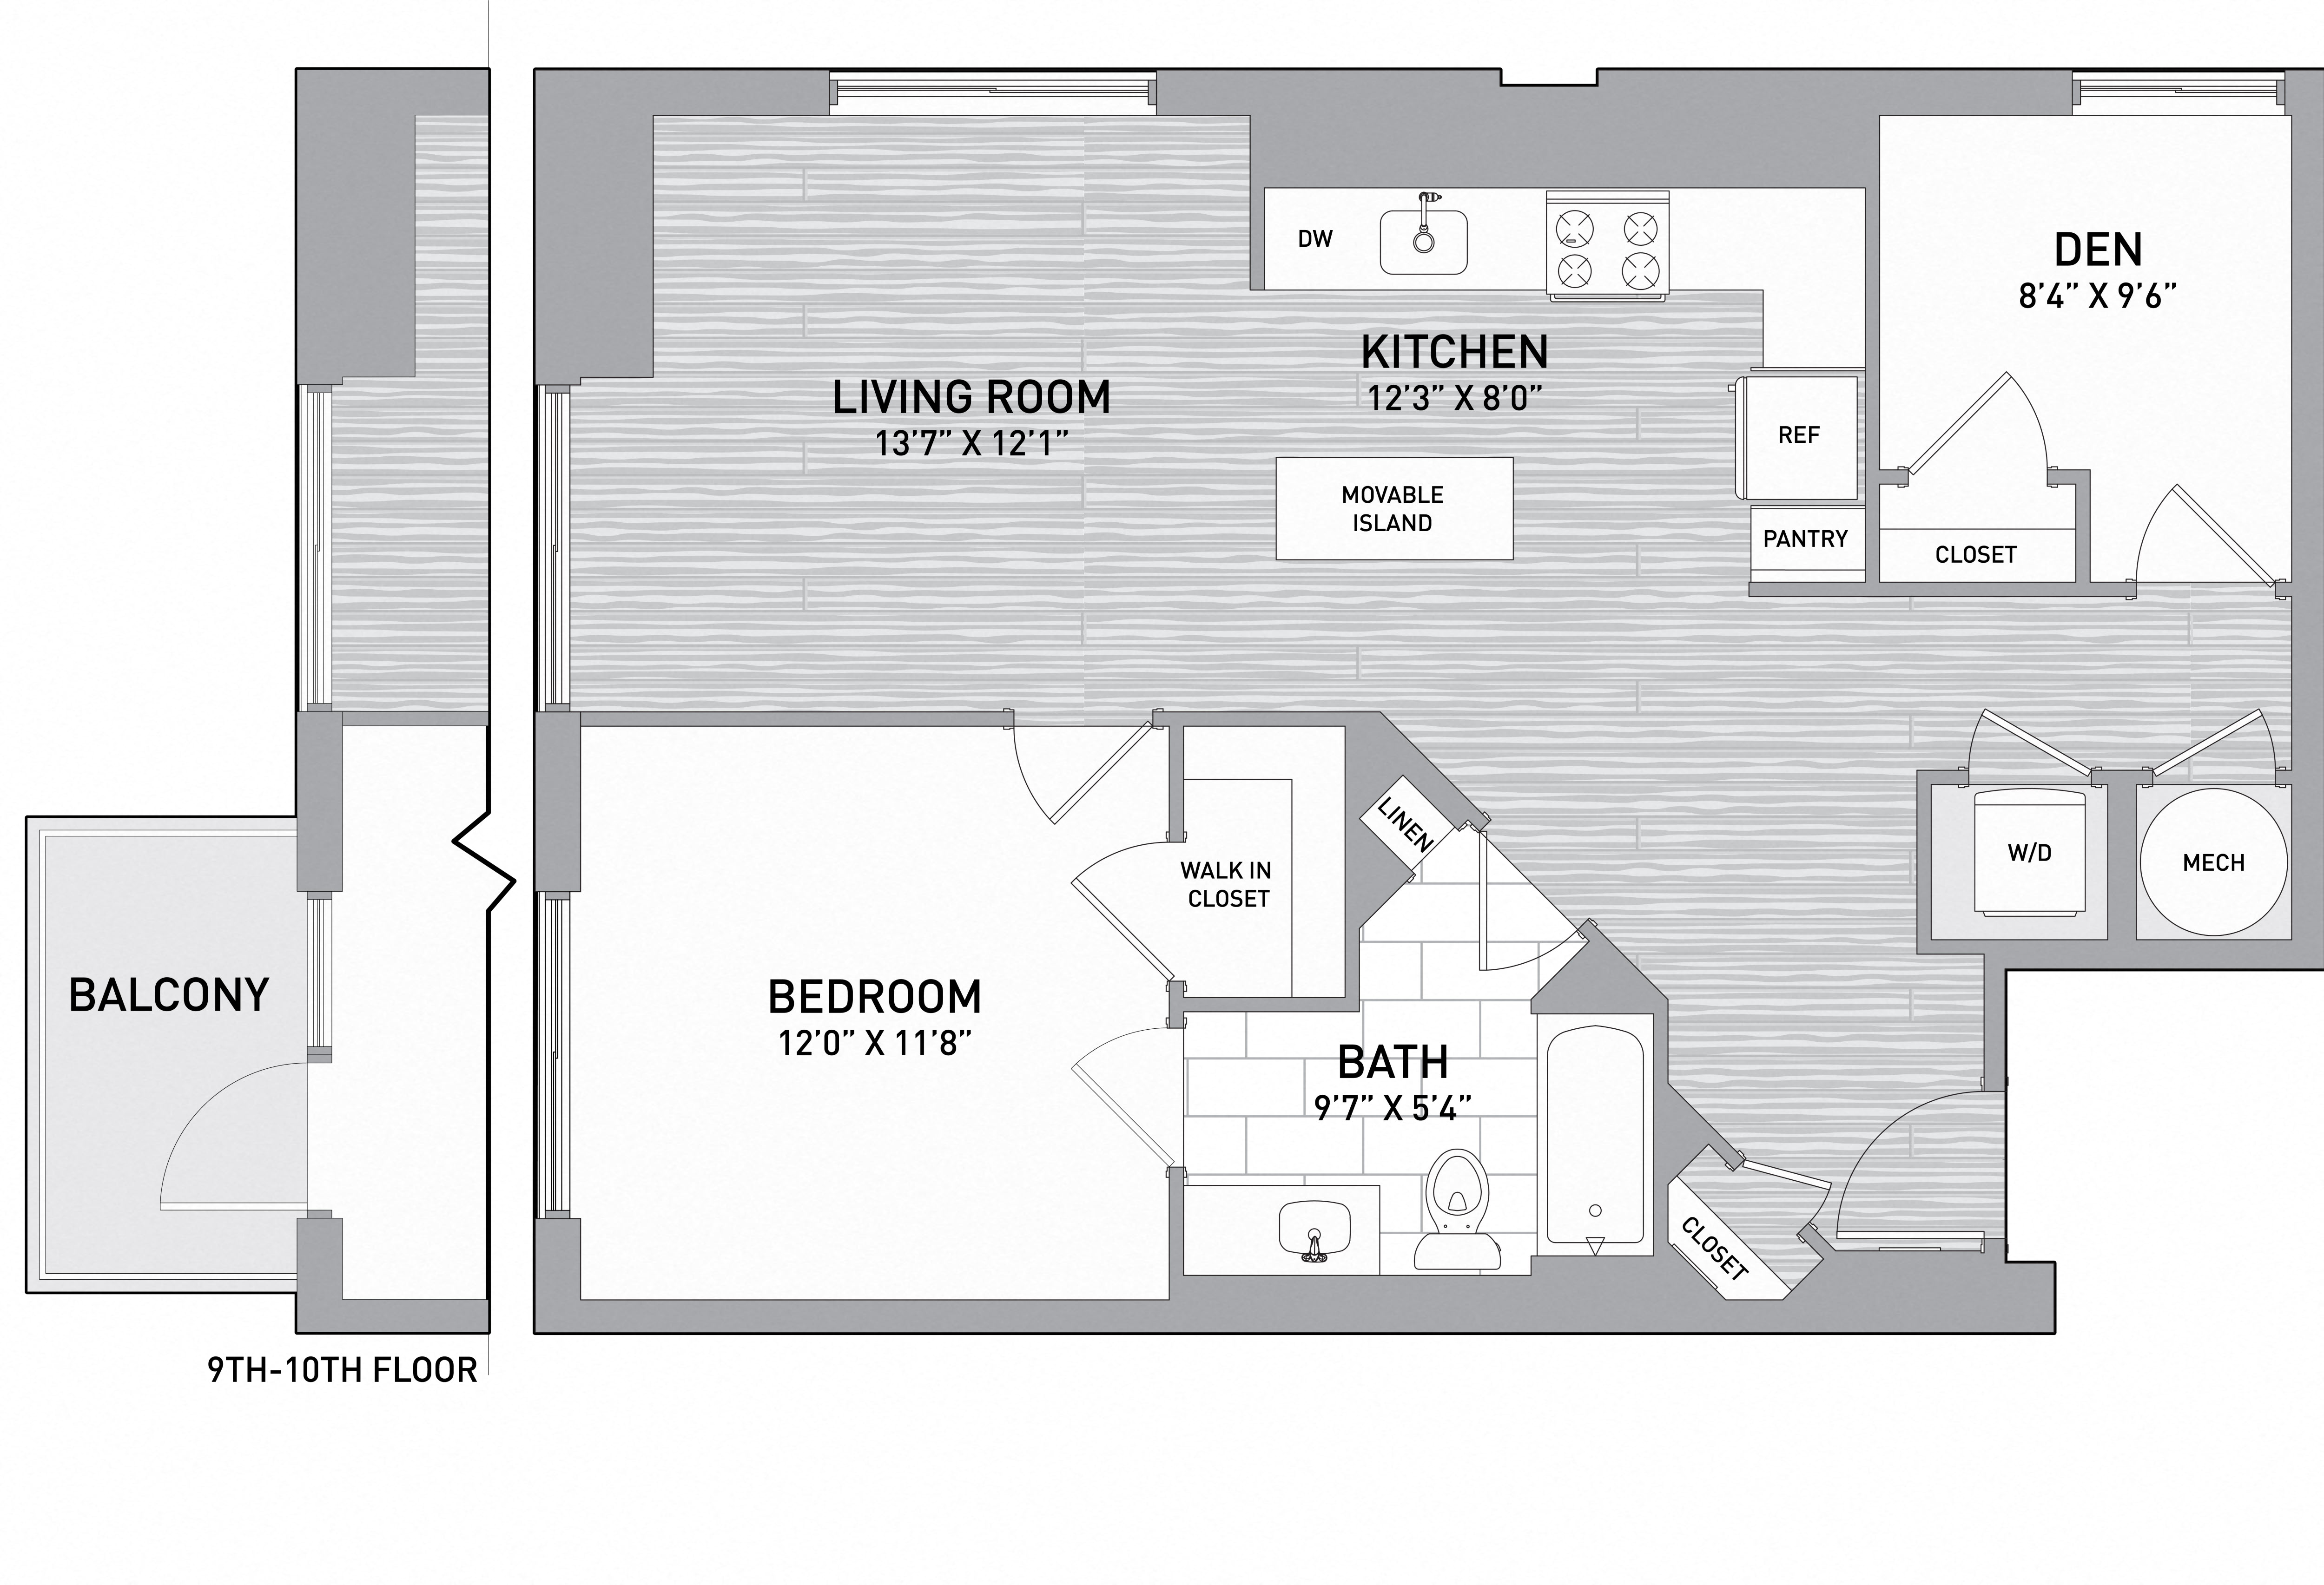 Floorplan Image of unit 151-0703